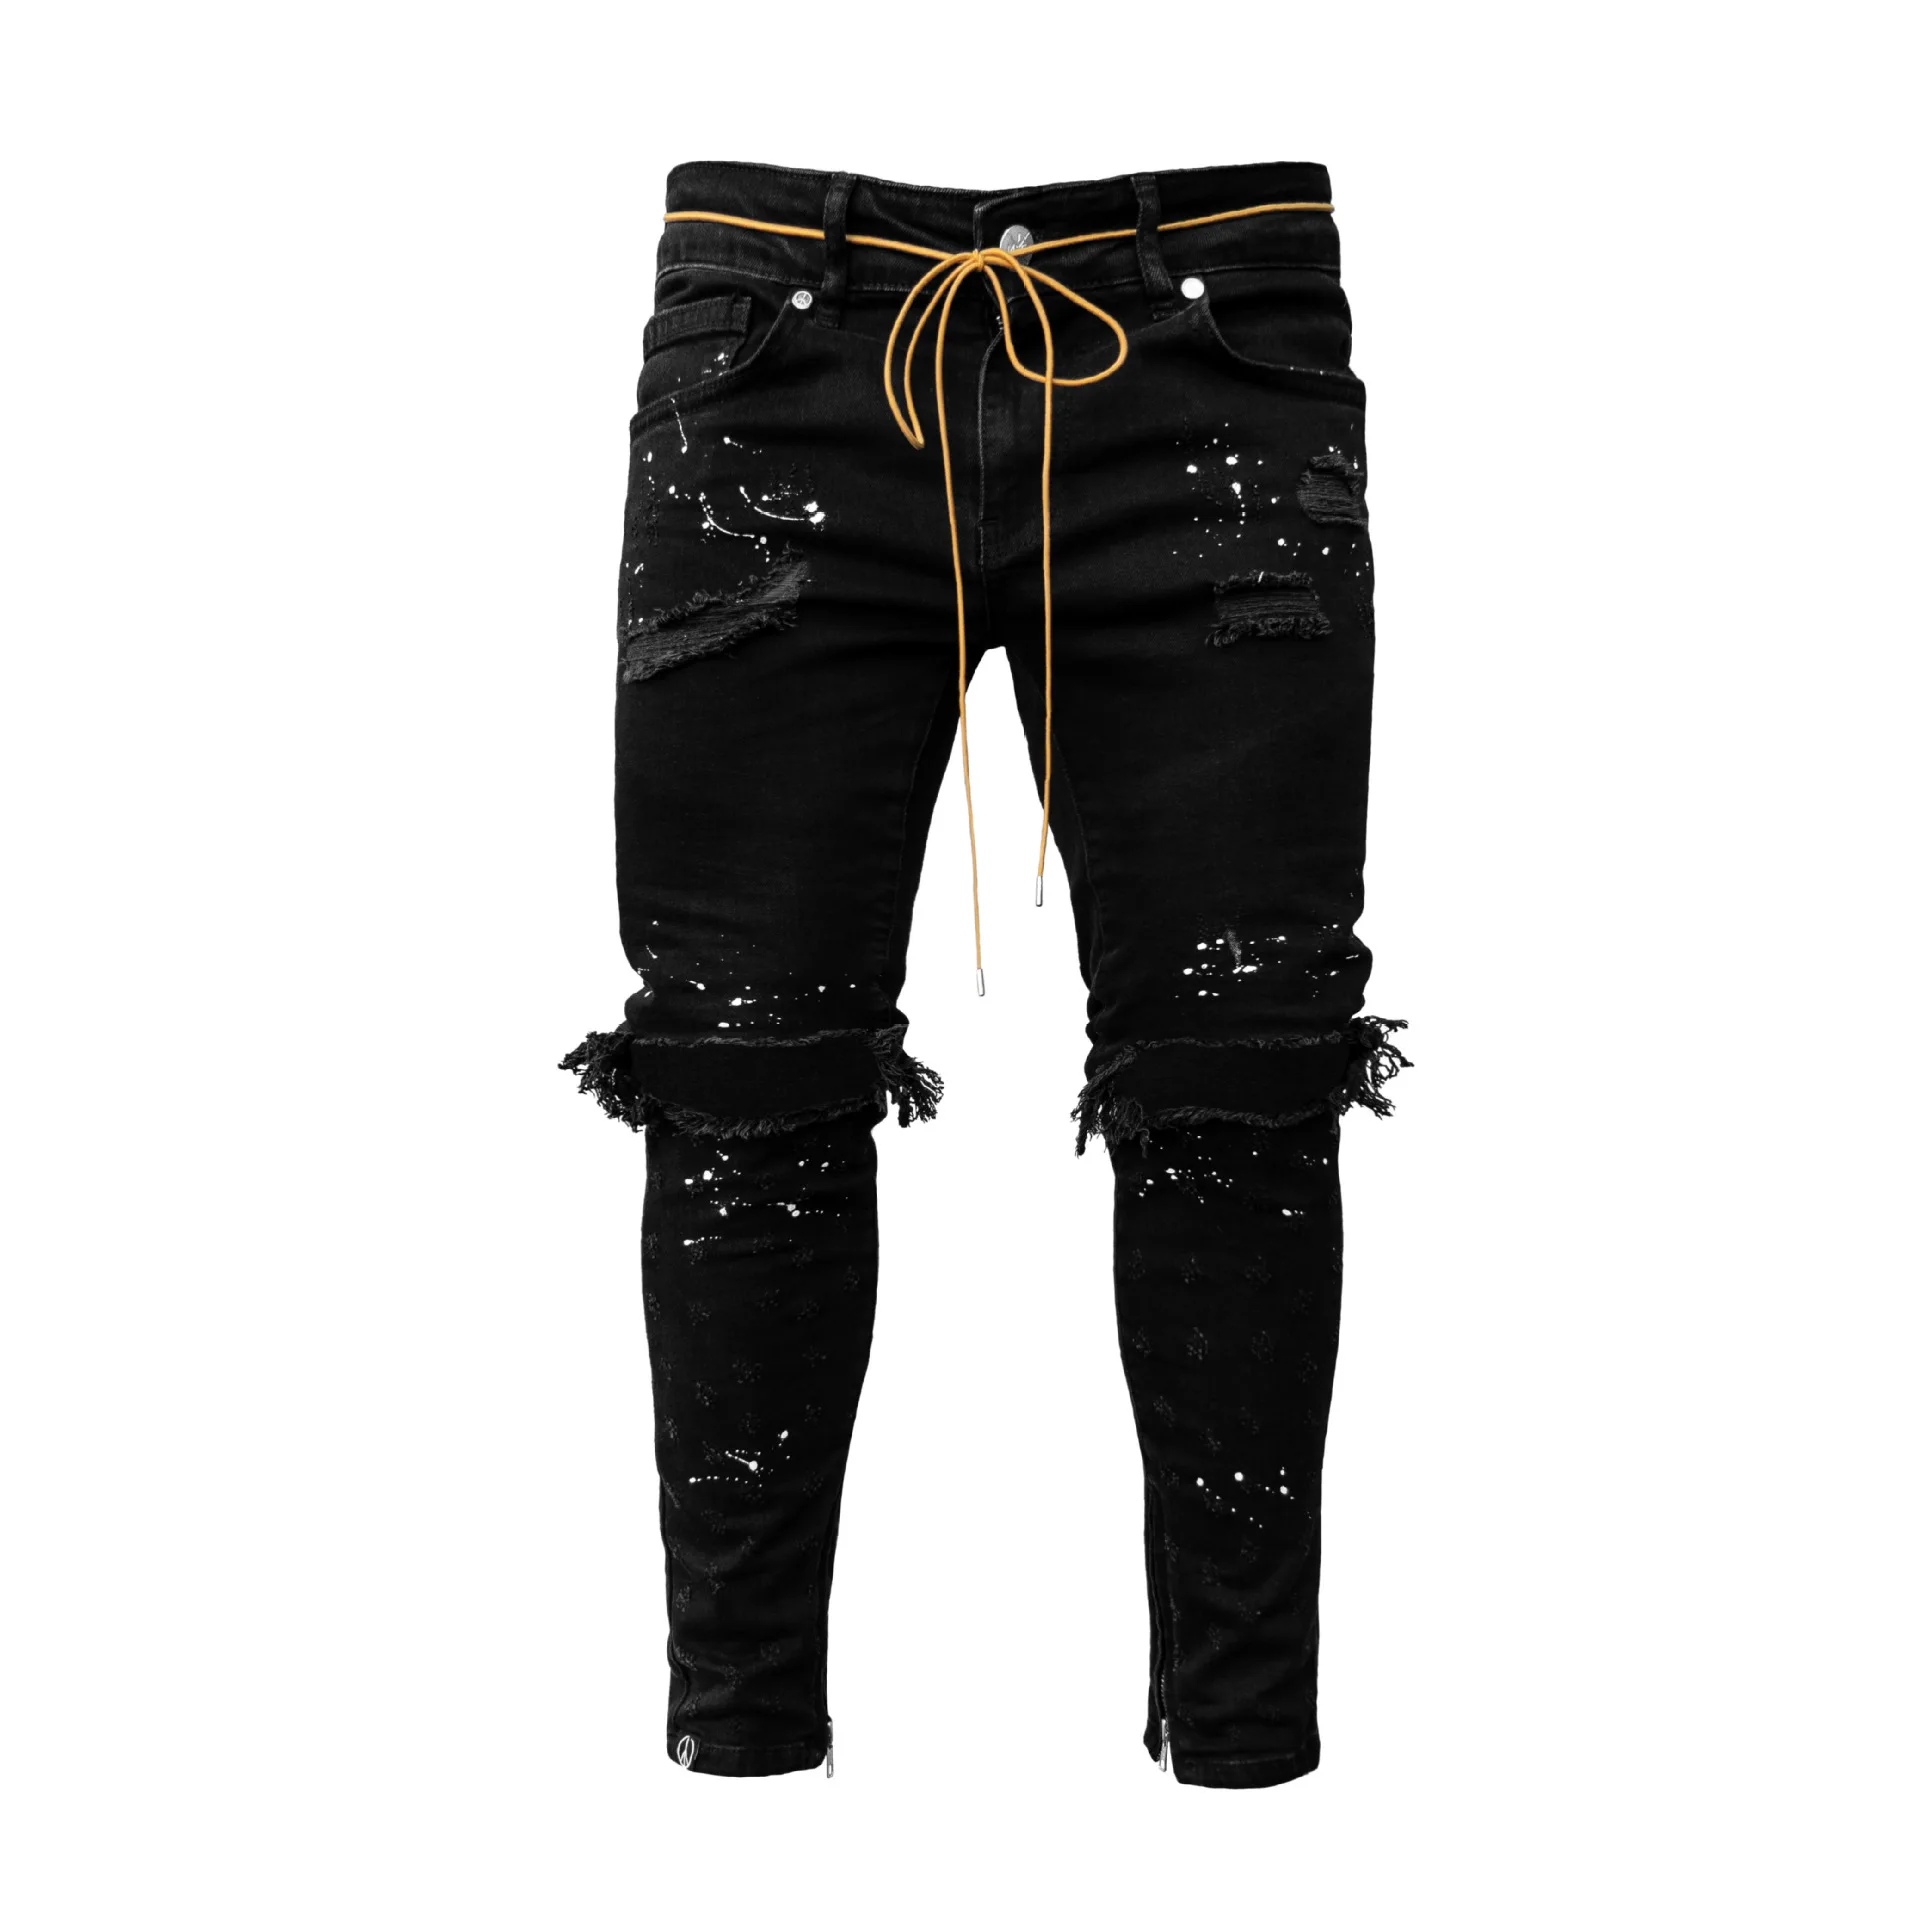 Mados Kulkšnies Užtrauktukas Skinny Jeans vyriški Džinsai Ruožas Sunaikinta Kankina Dažų tašką Dizainas